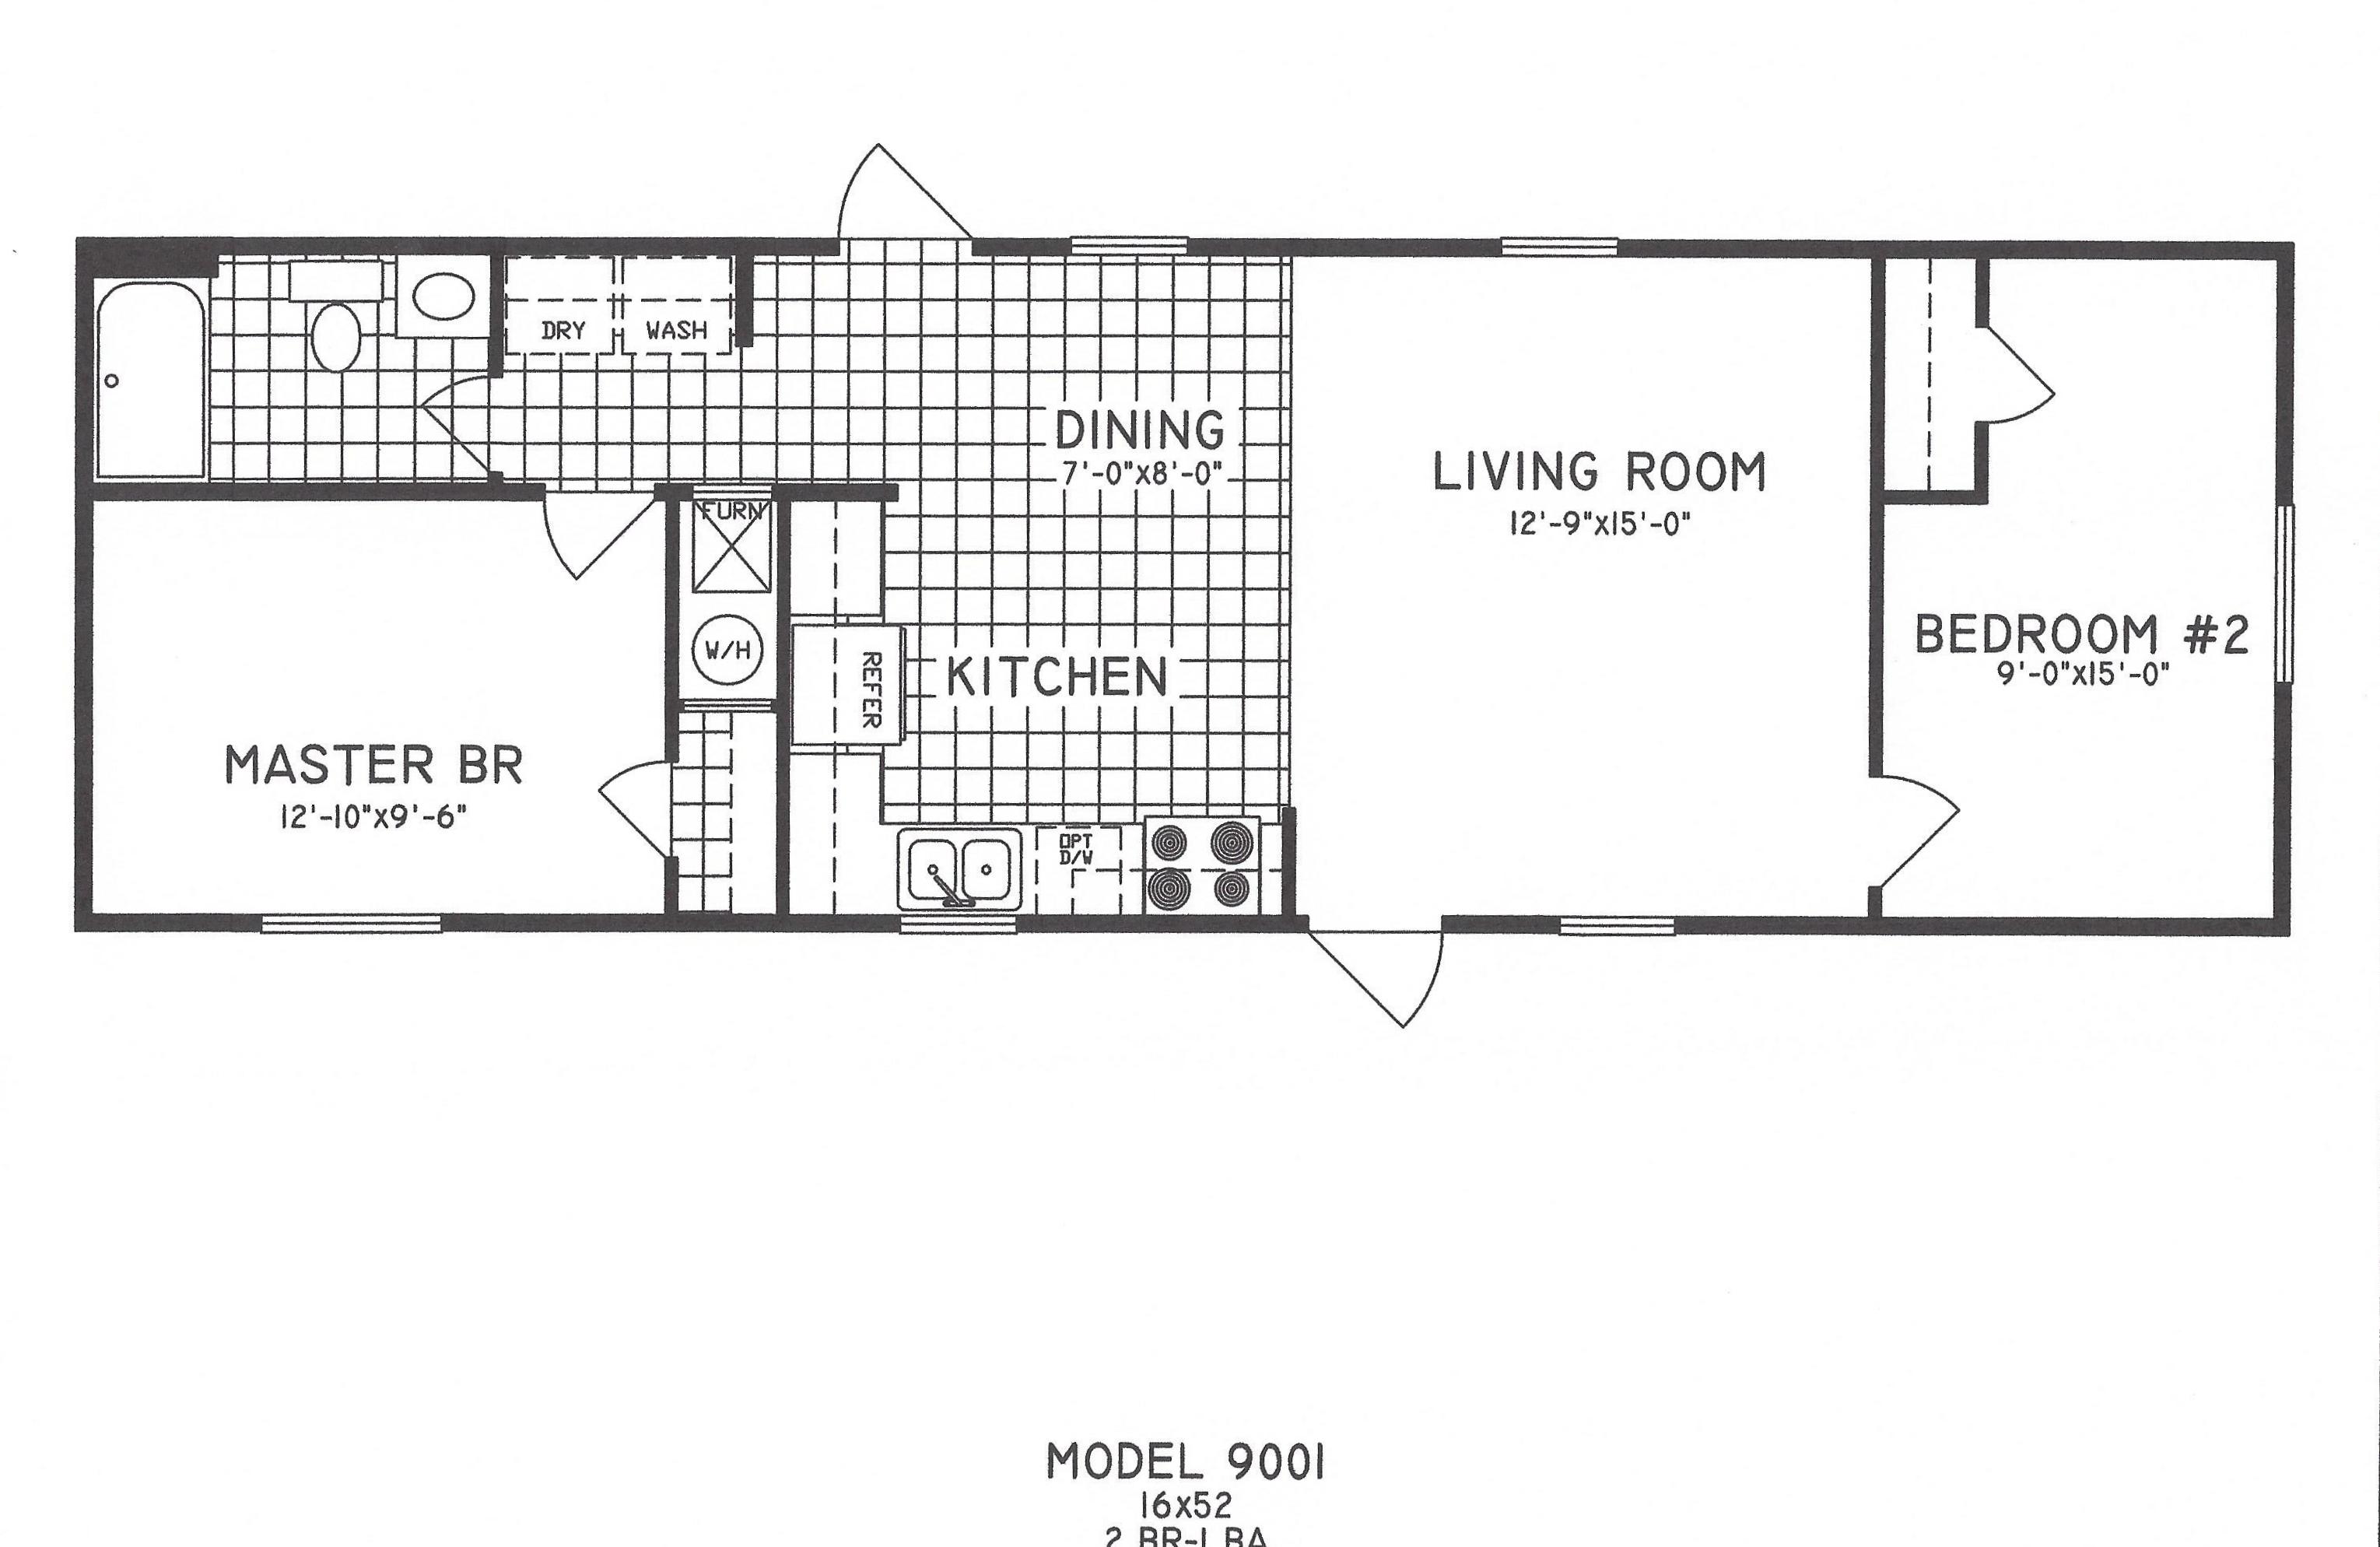 2 Bedroom Floor Plan C9001 Hawks Homes Manufactured